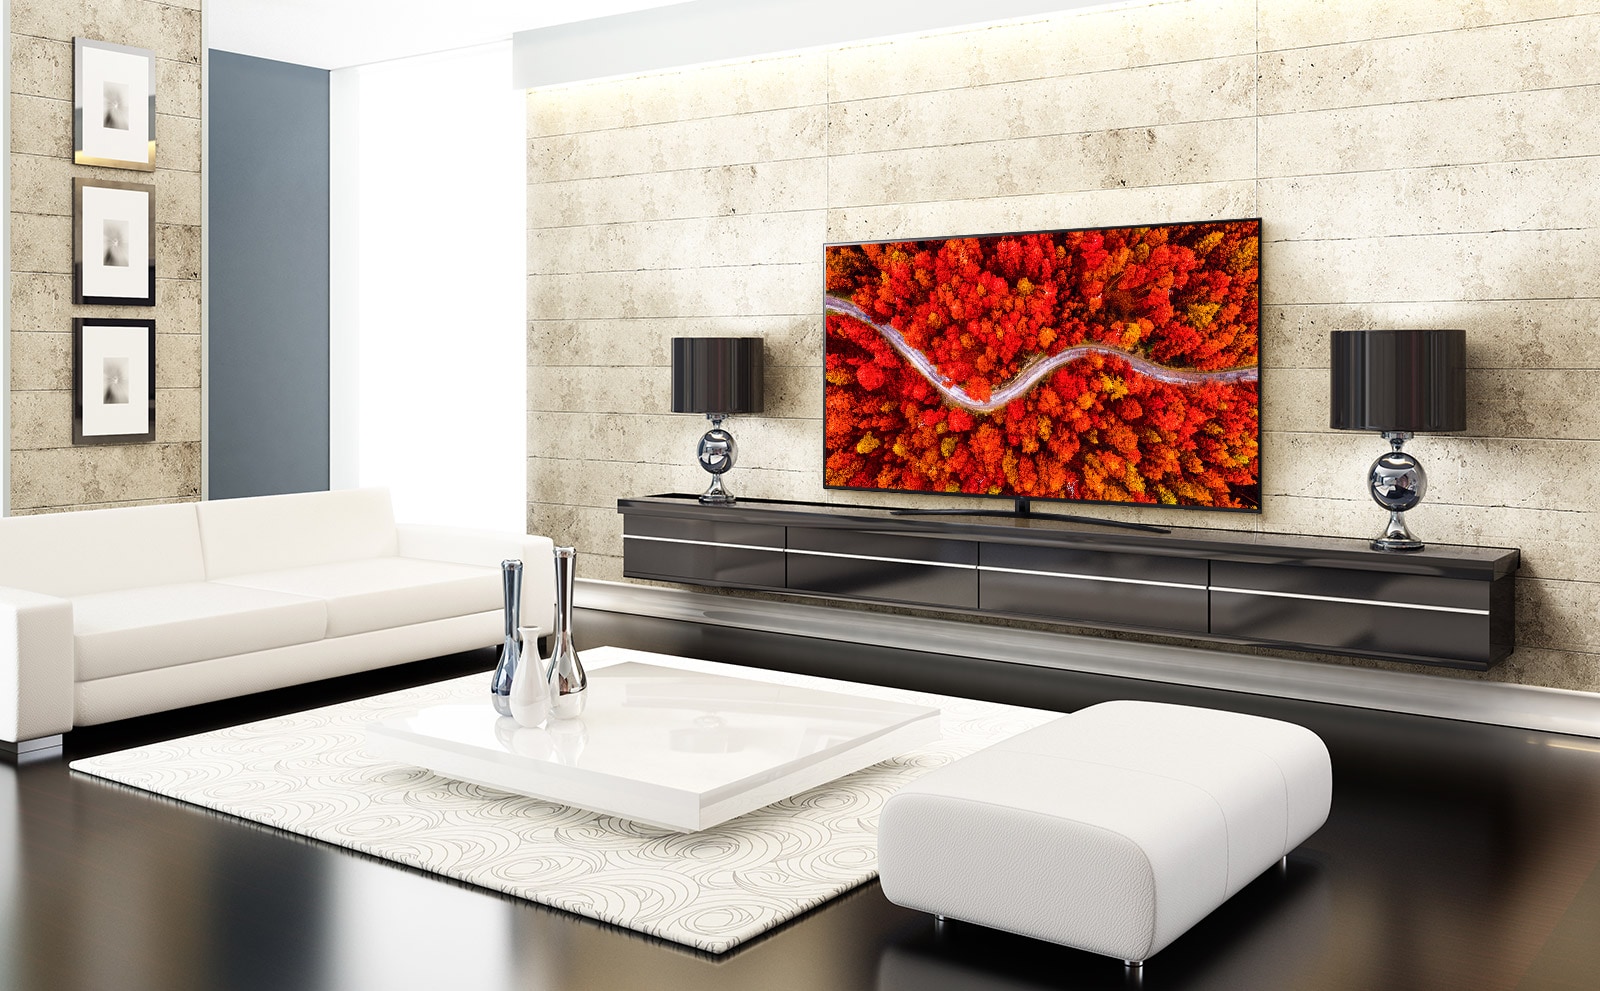 Luxus hálószoba TV-vel, amelyen egy vörös színű erdő légi felvétele látható.